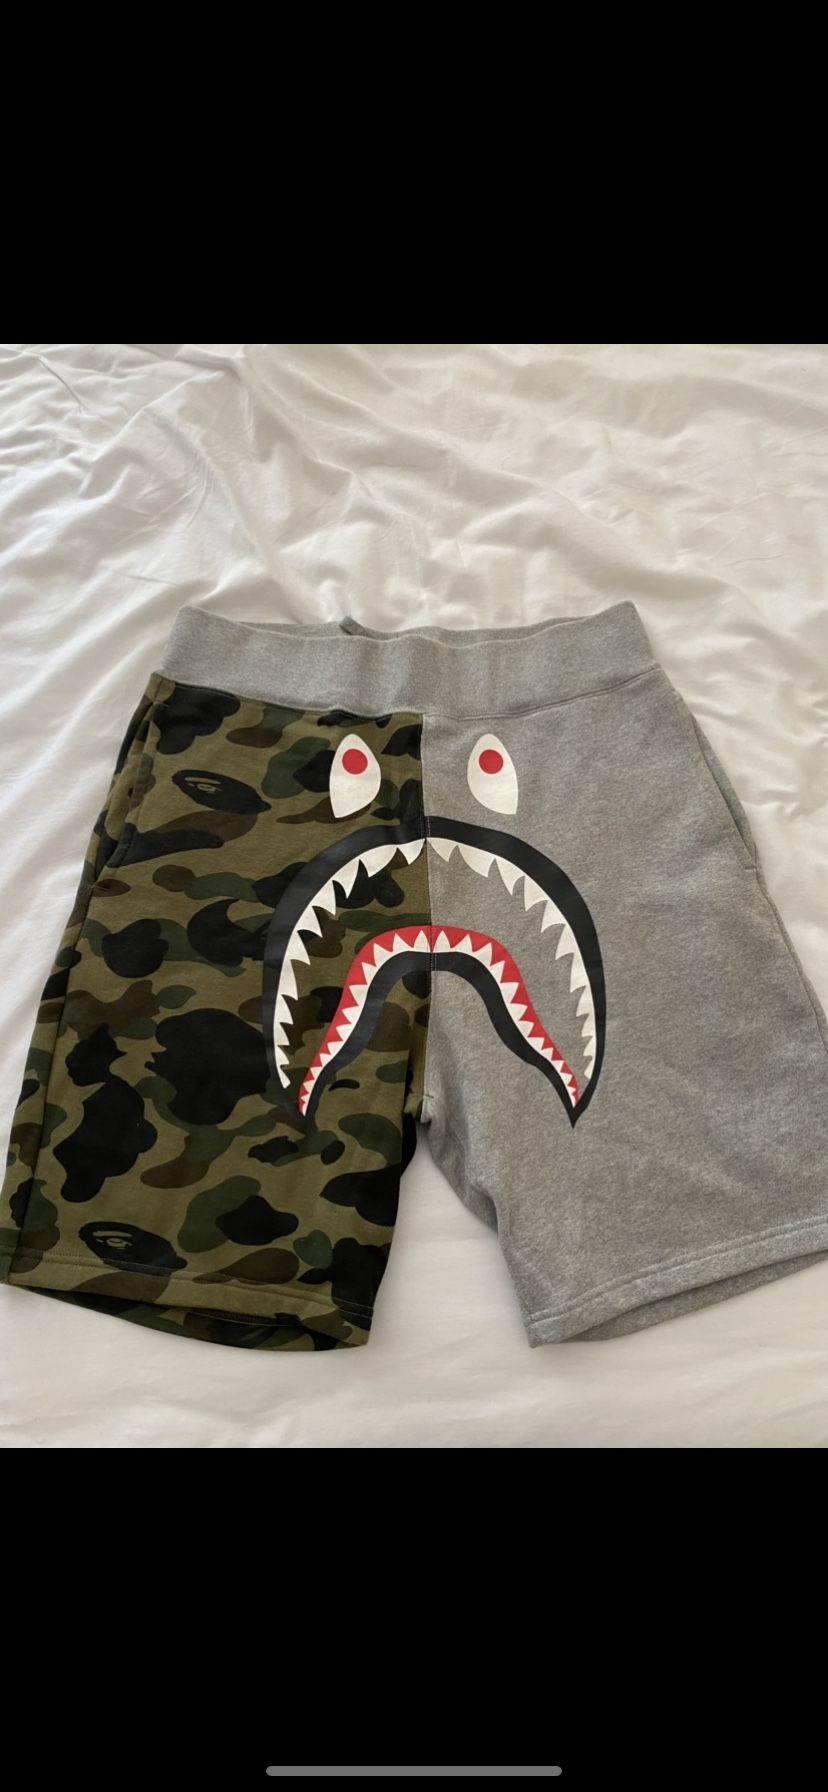 Authentic Bape Shark Shorts Large 